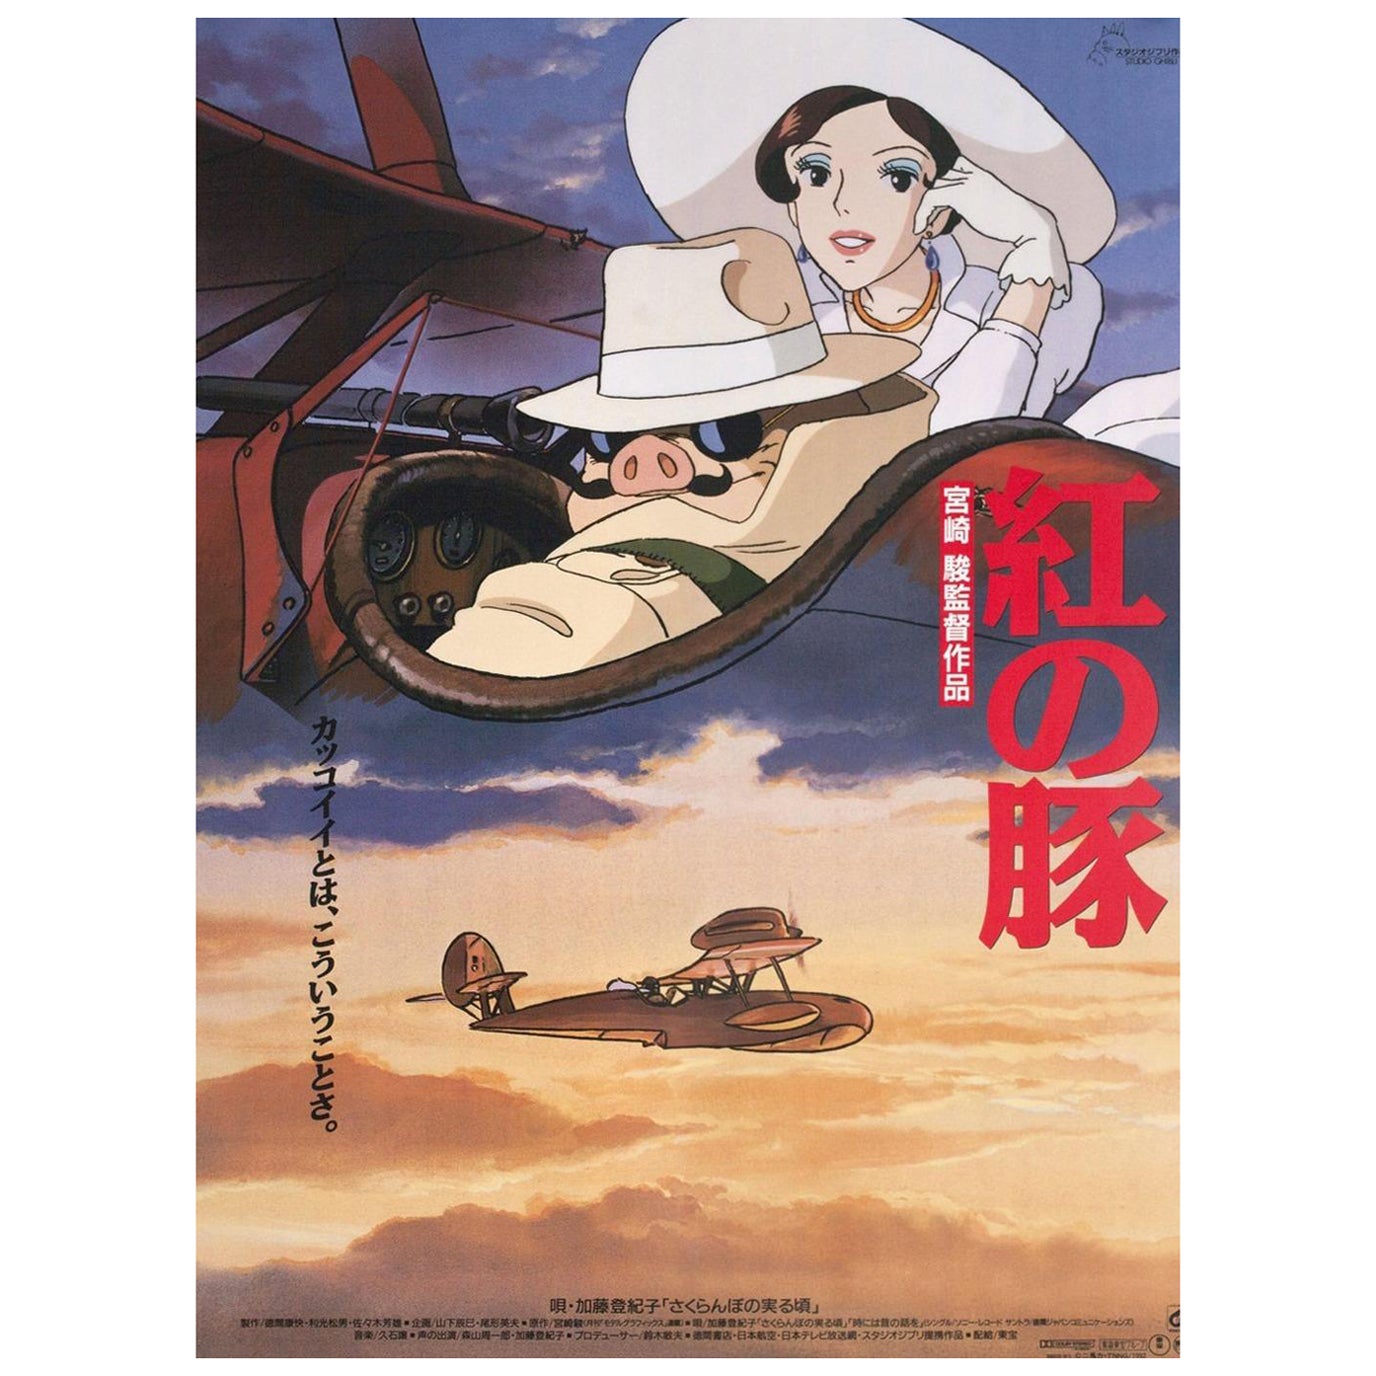 Affiche vintage originale de Porco Rosso (Japonais) de 1992